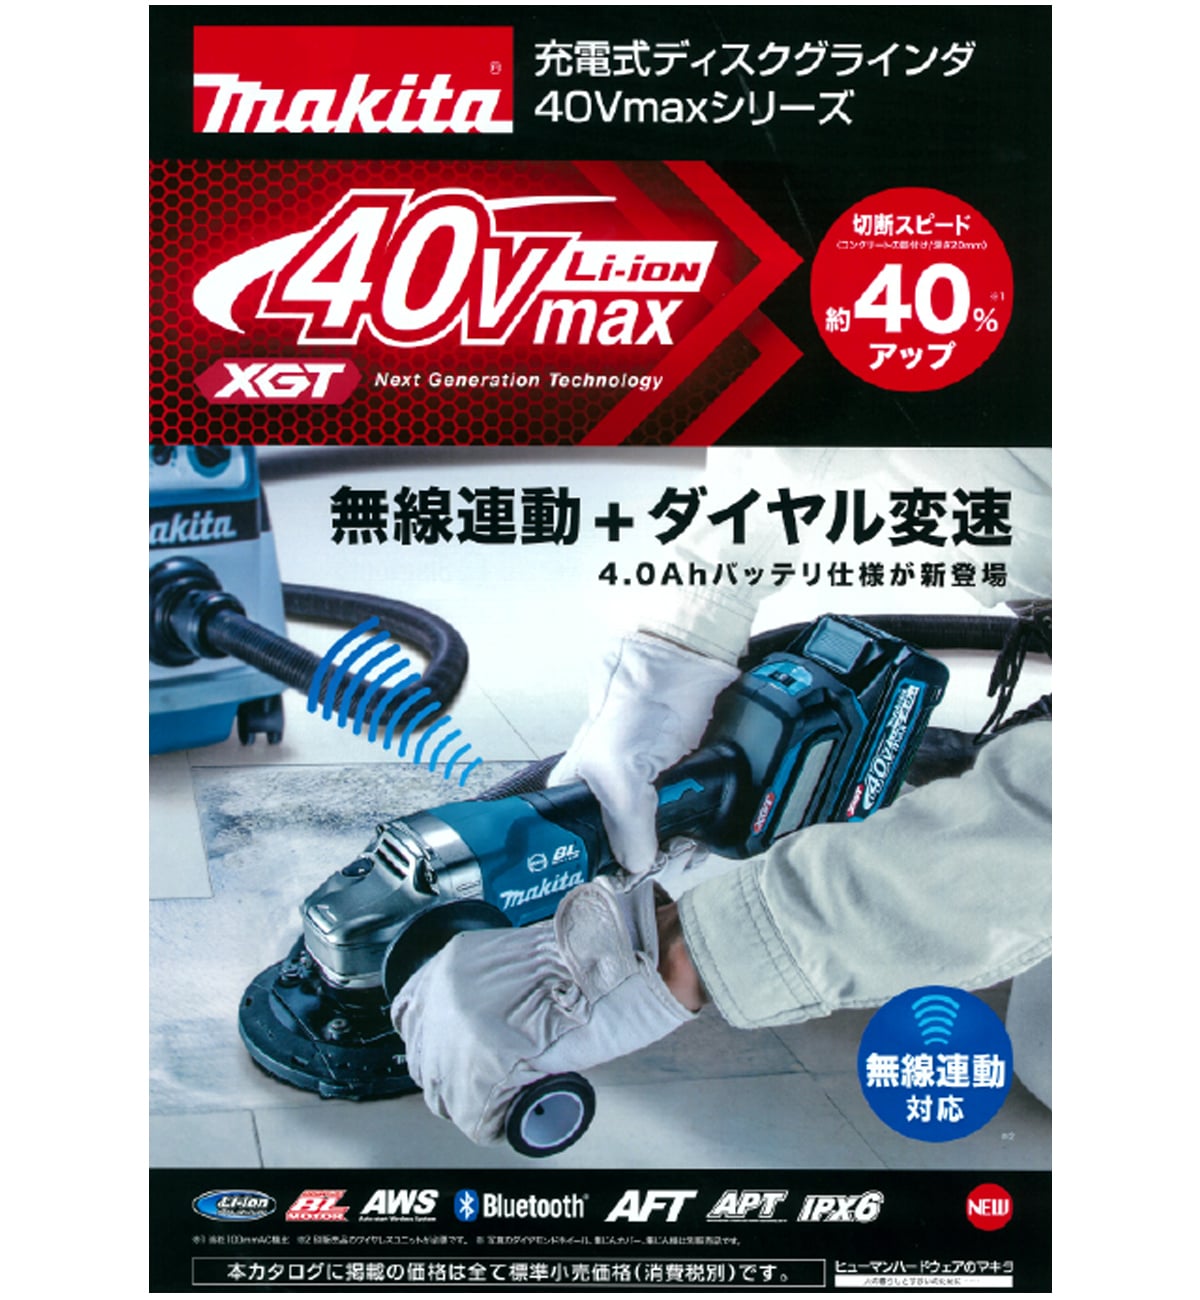 マキタ GA020GRMX 40Vmax充電式ディスクグラインダ125mm ウエダ金物